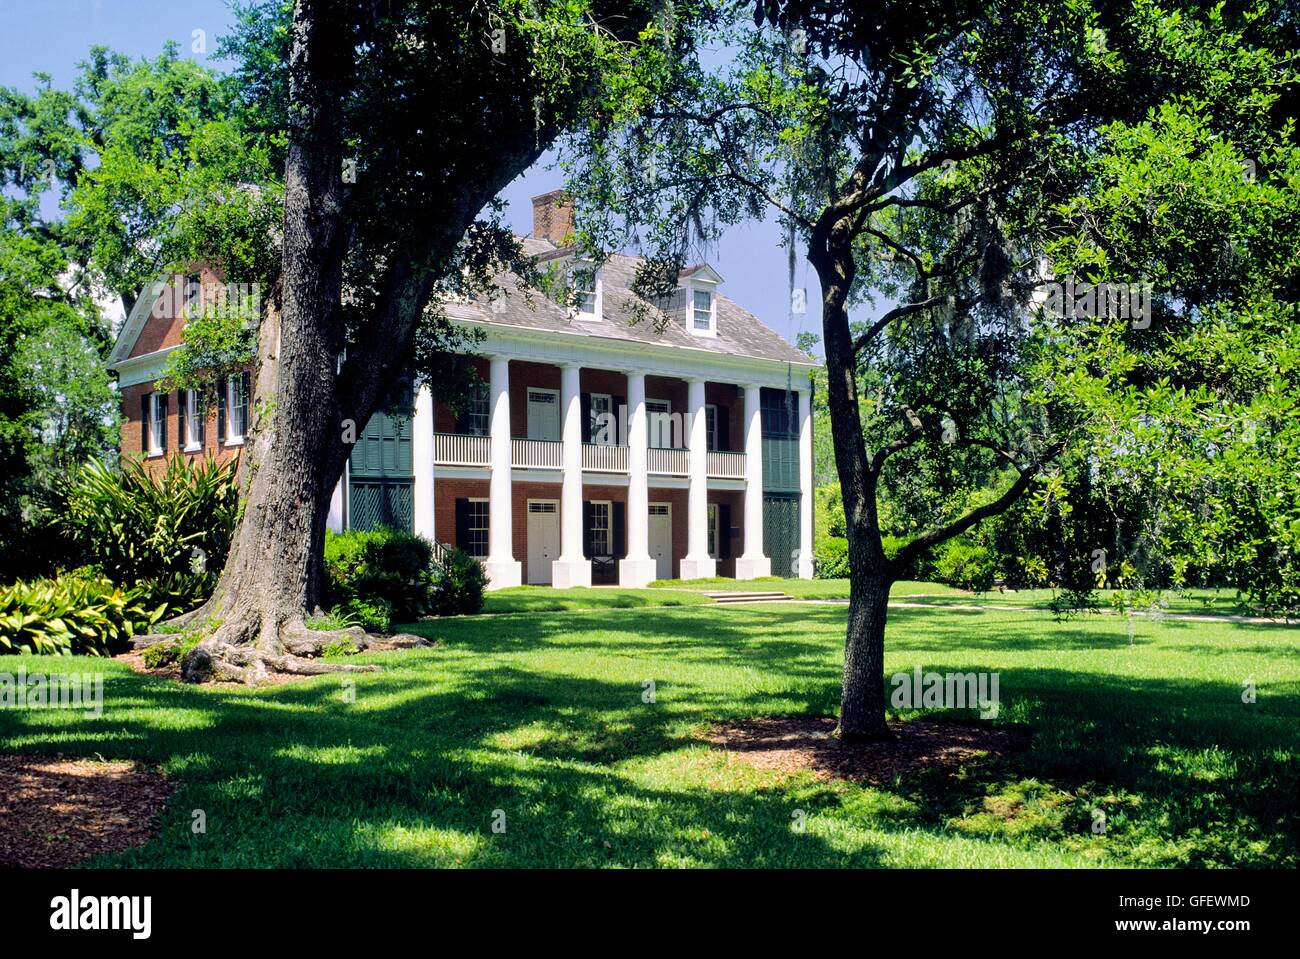 Les états du sud de la Louisiane plantation house connu comme des ombres sur la teche. Construit en 1853 Ville de New Iberia, Louisiane, Etats-Unis Banque D'Images